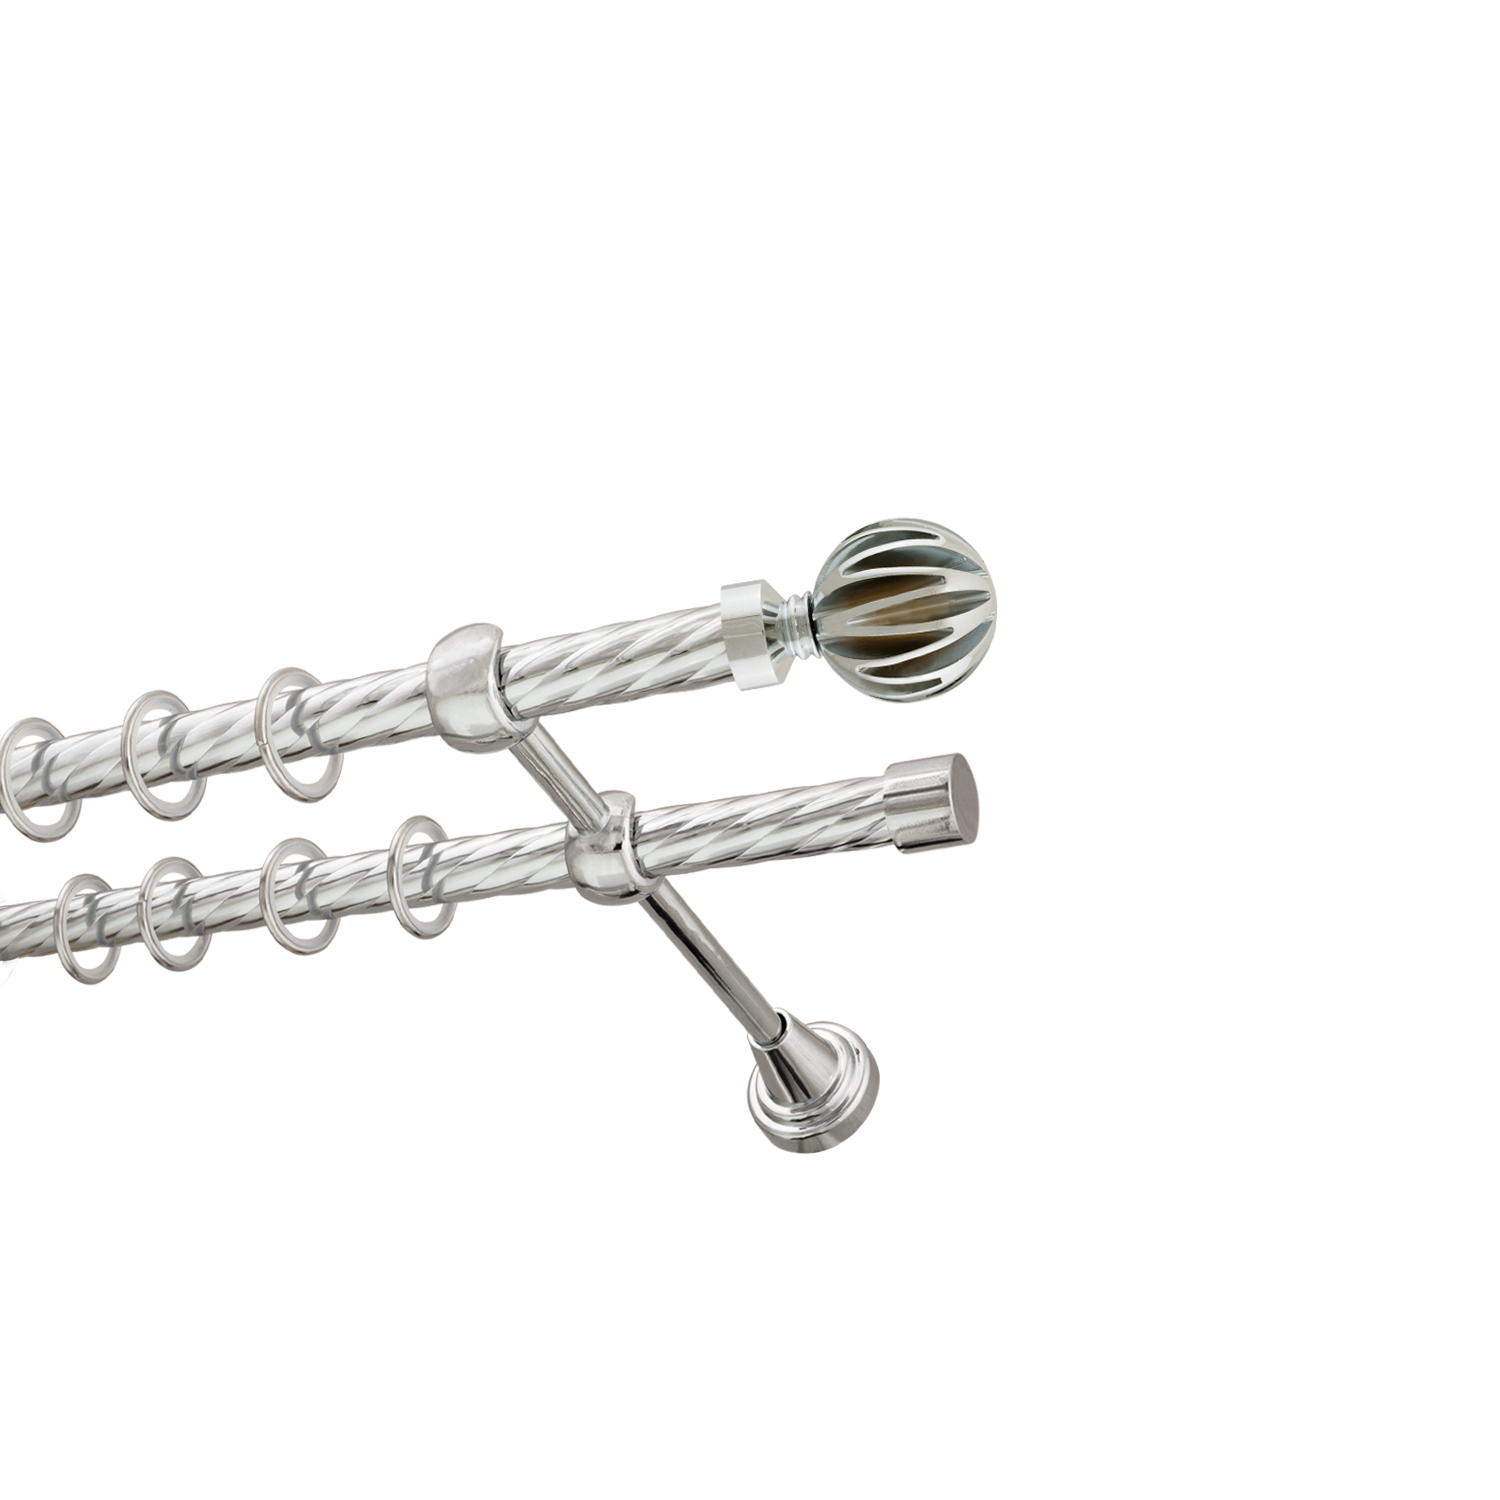 Металлический карниз для штор Шафран, двухрядный 16/16 мм, серебро, витая штанга, длина 140 см